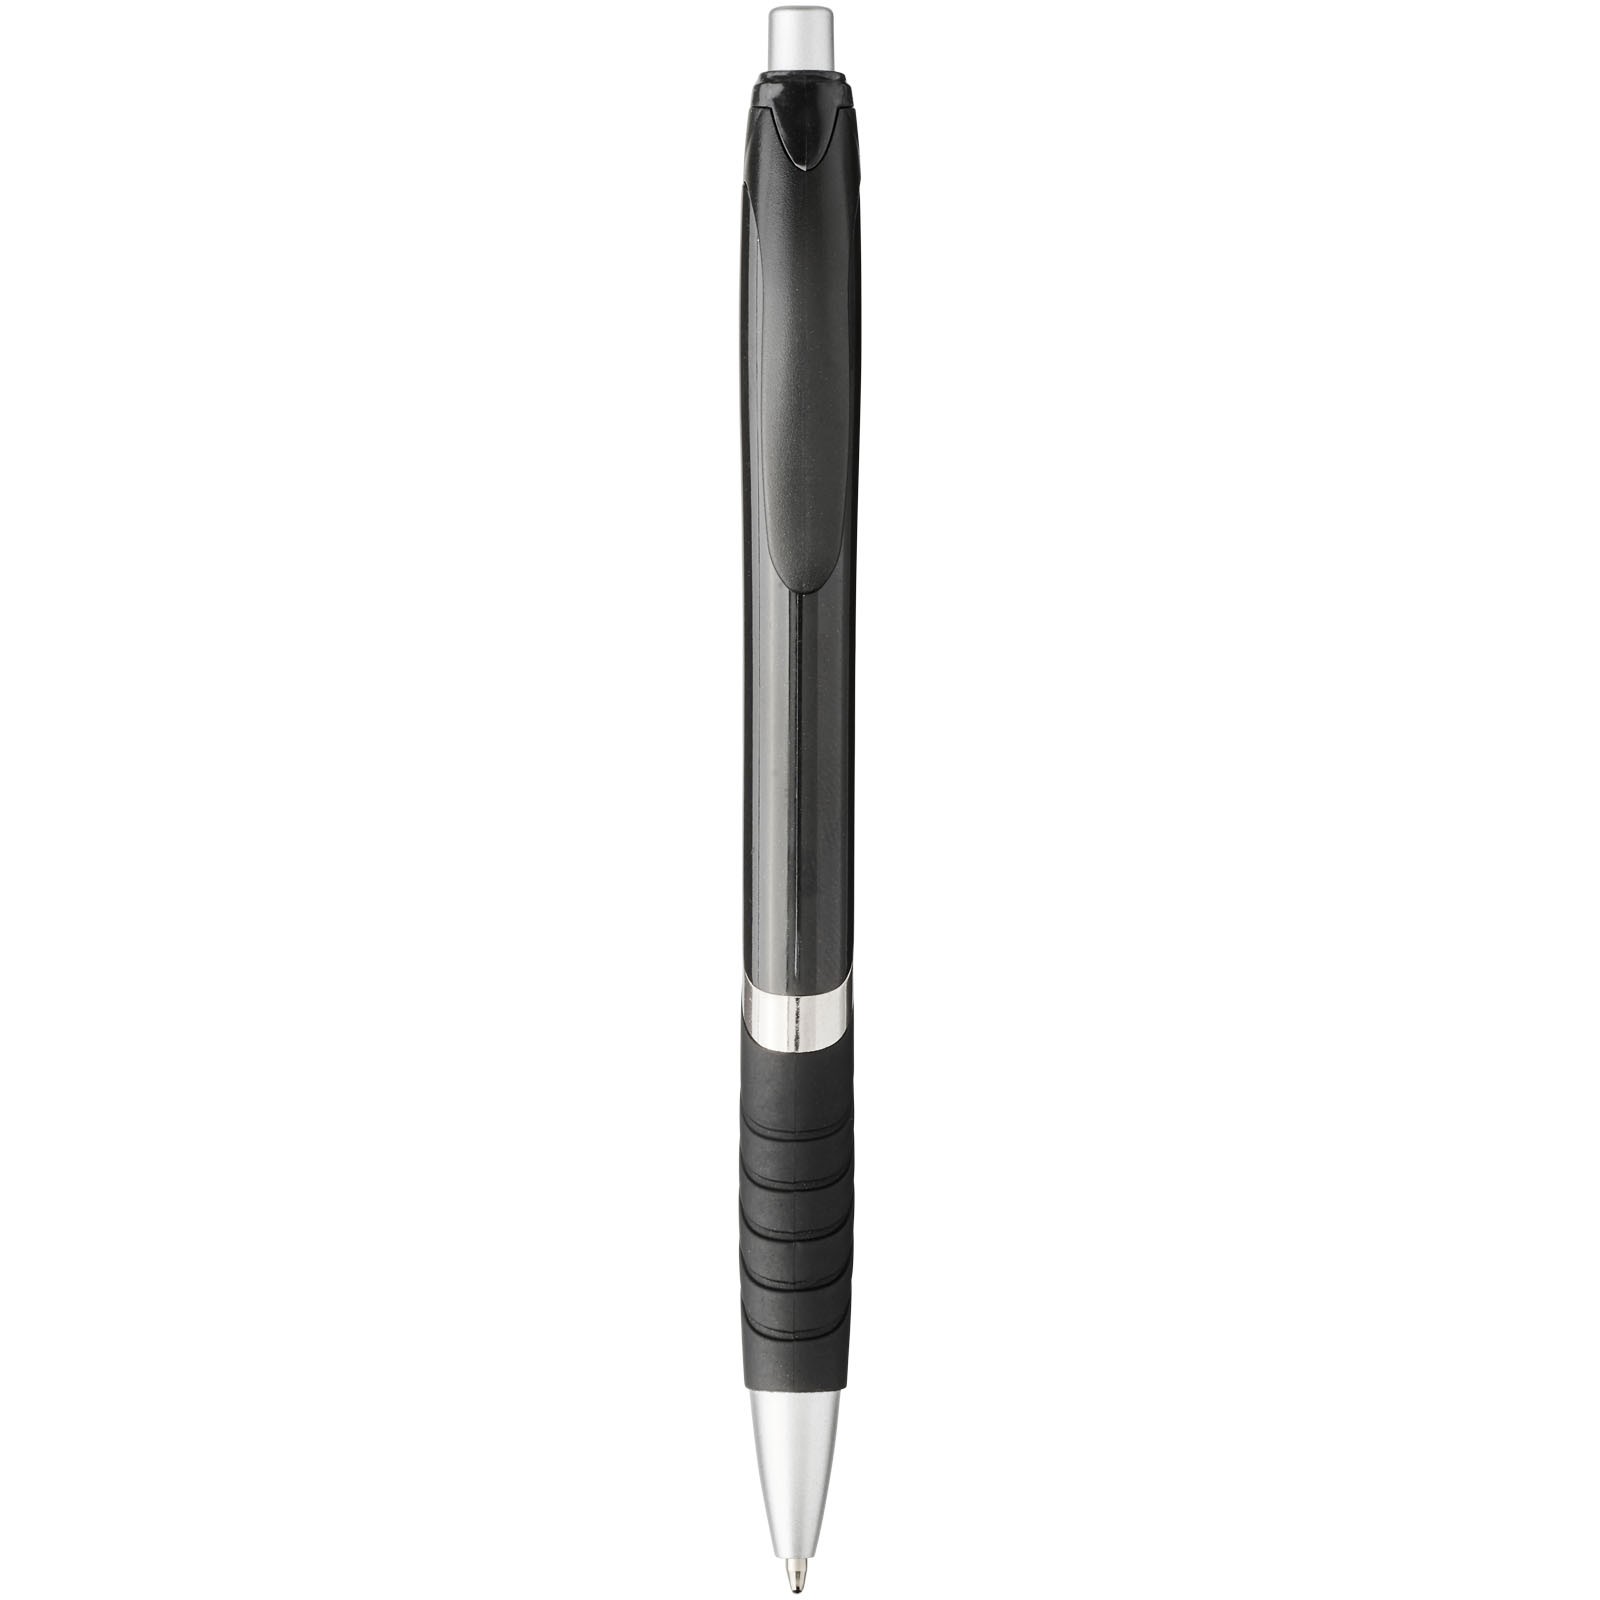 Kuličkové pero s pryžovým úchopem Turbo - Černá